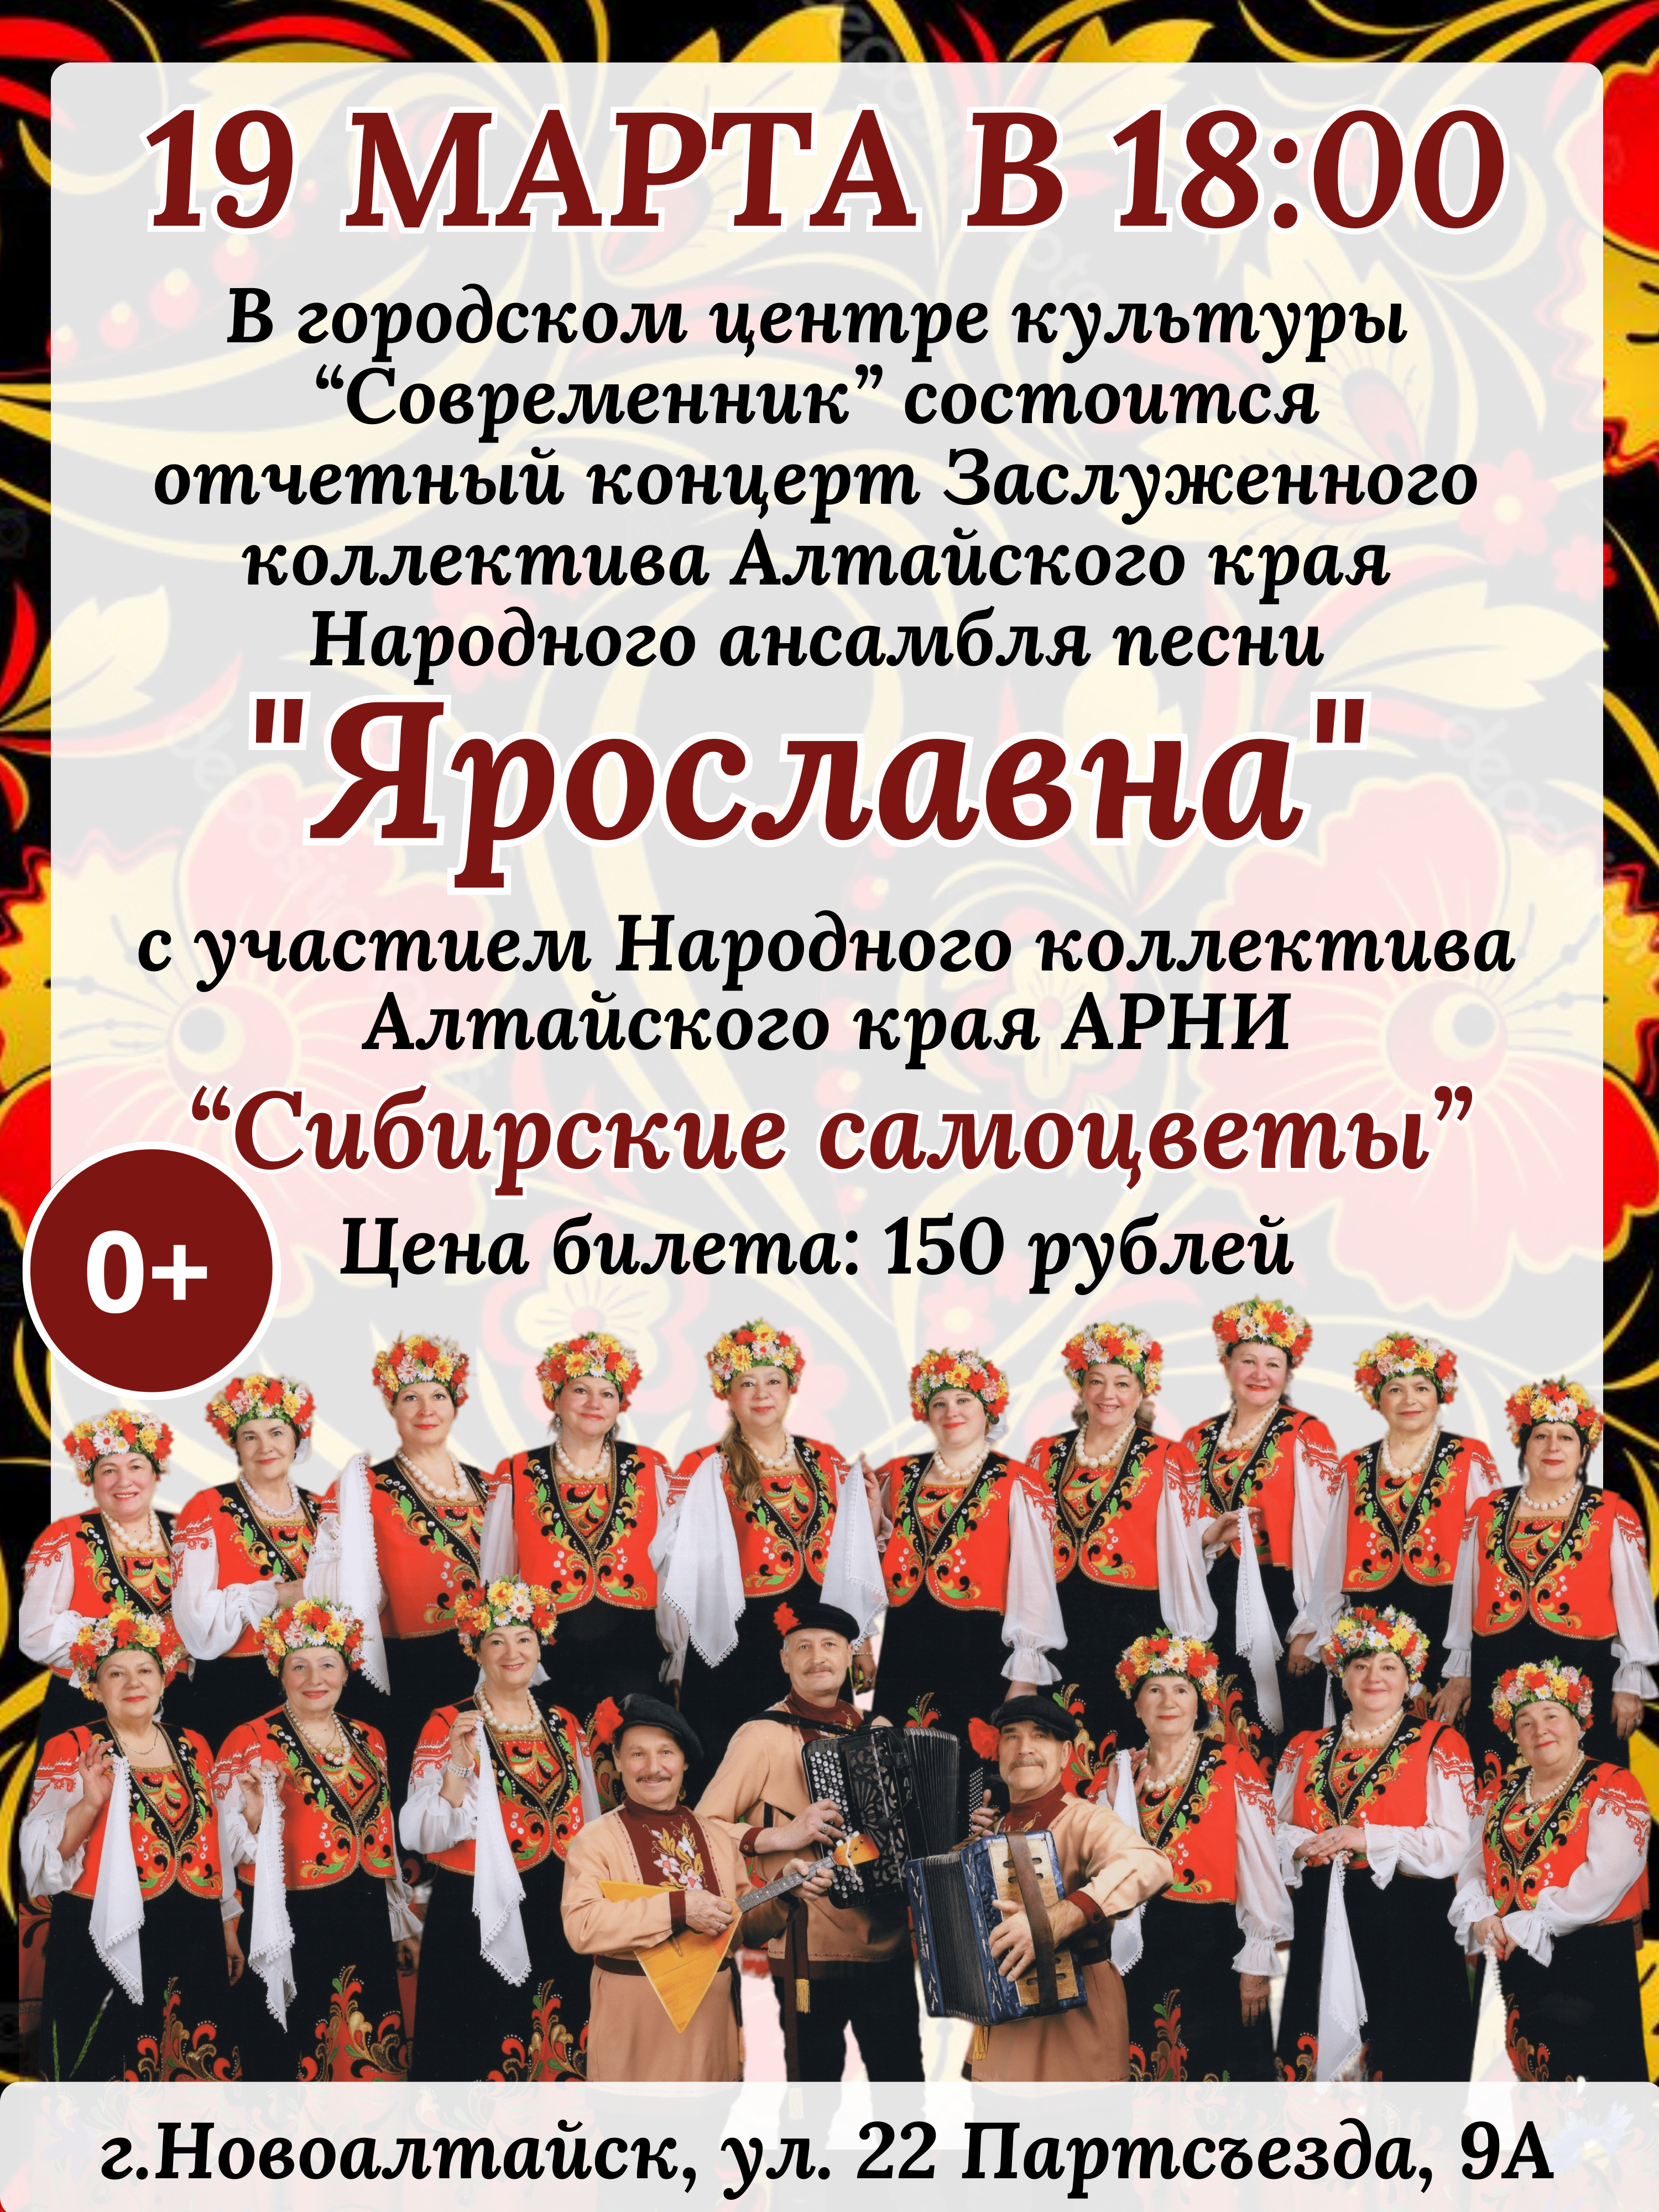 Отчетный концерт Заслуженного коллектива Алтайского края народного ансамбля песни «Ярославна»